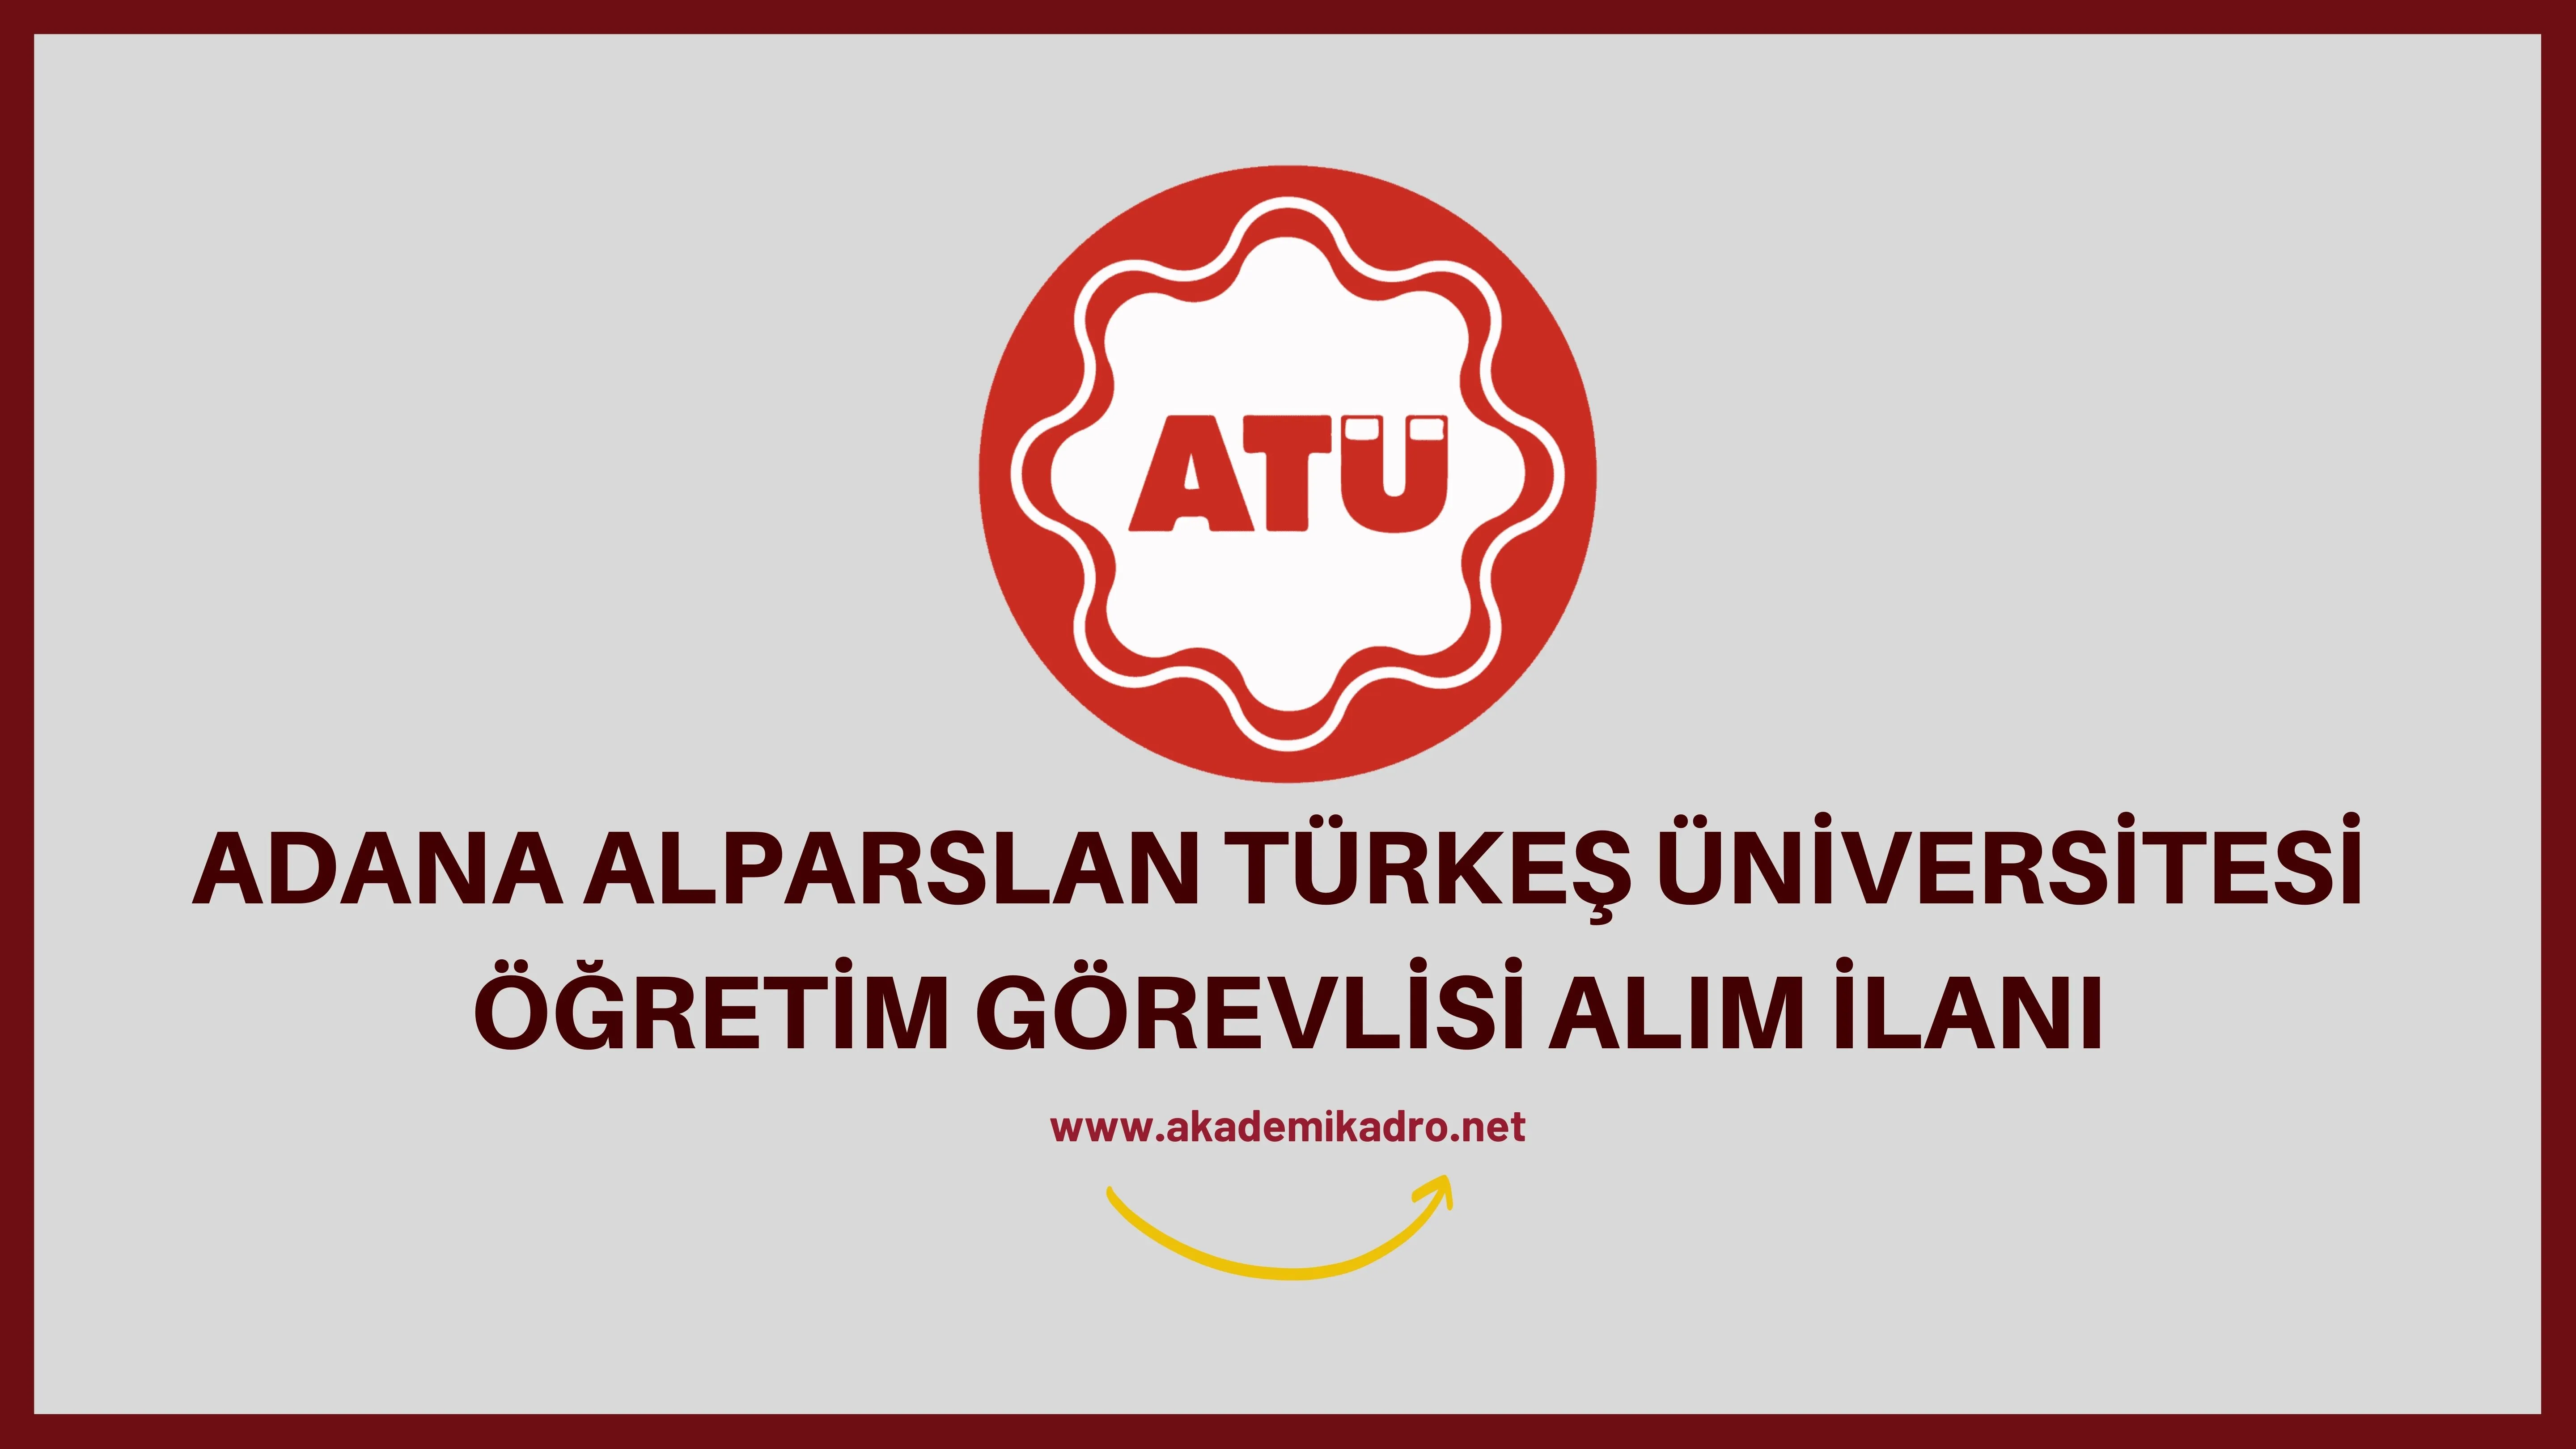 Adana Alparslan Türkeş Bilim ve Teknoloji Üniversitesi 6 Öğretim Görevlisi alacaktır. Son başvuru tarihi 28 Eylül 2022